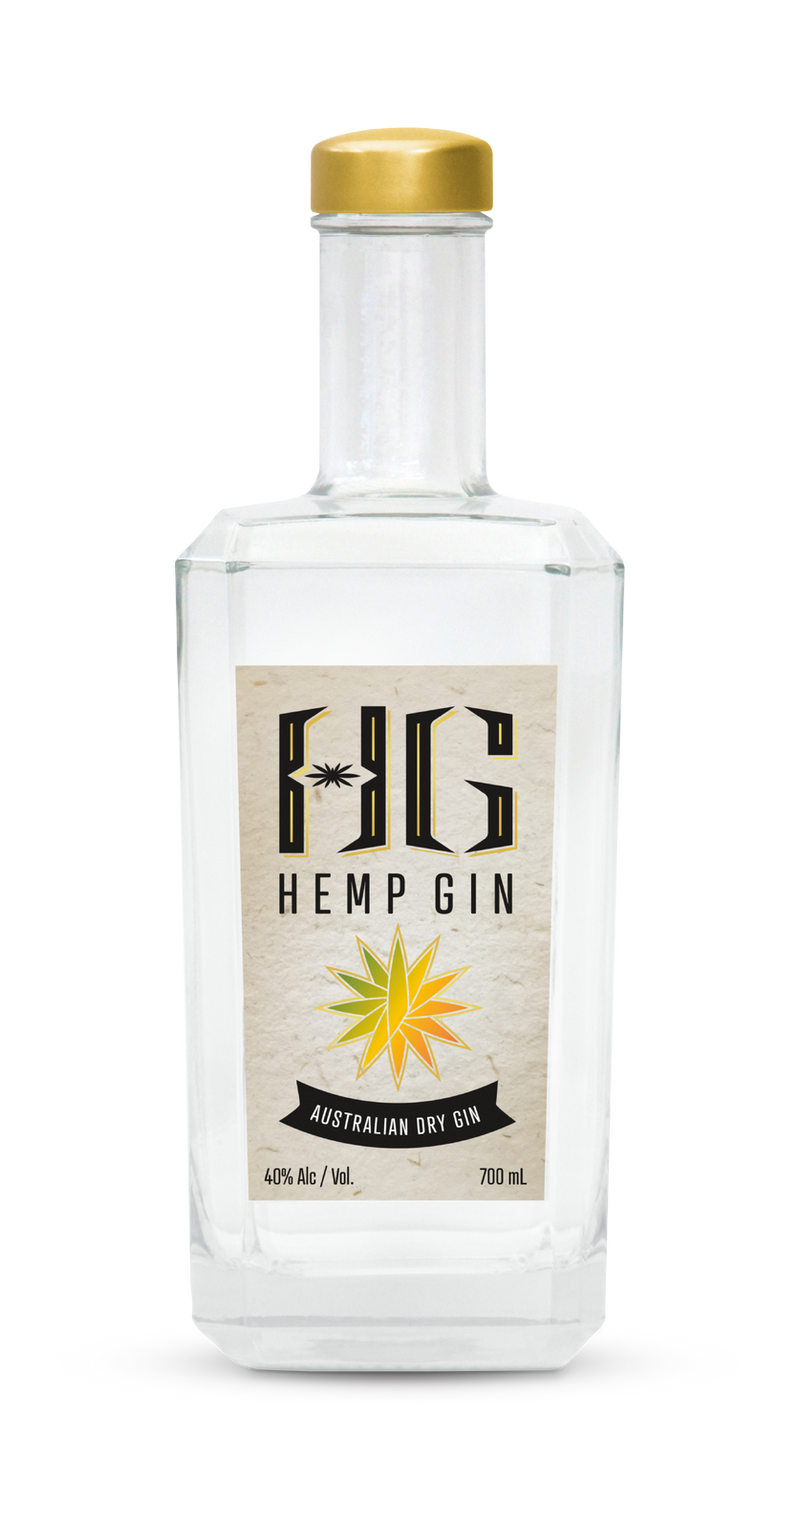 Hemp Gin - Australian Dry Gin (700 ml)